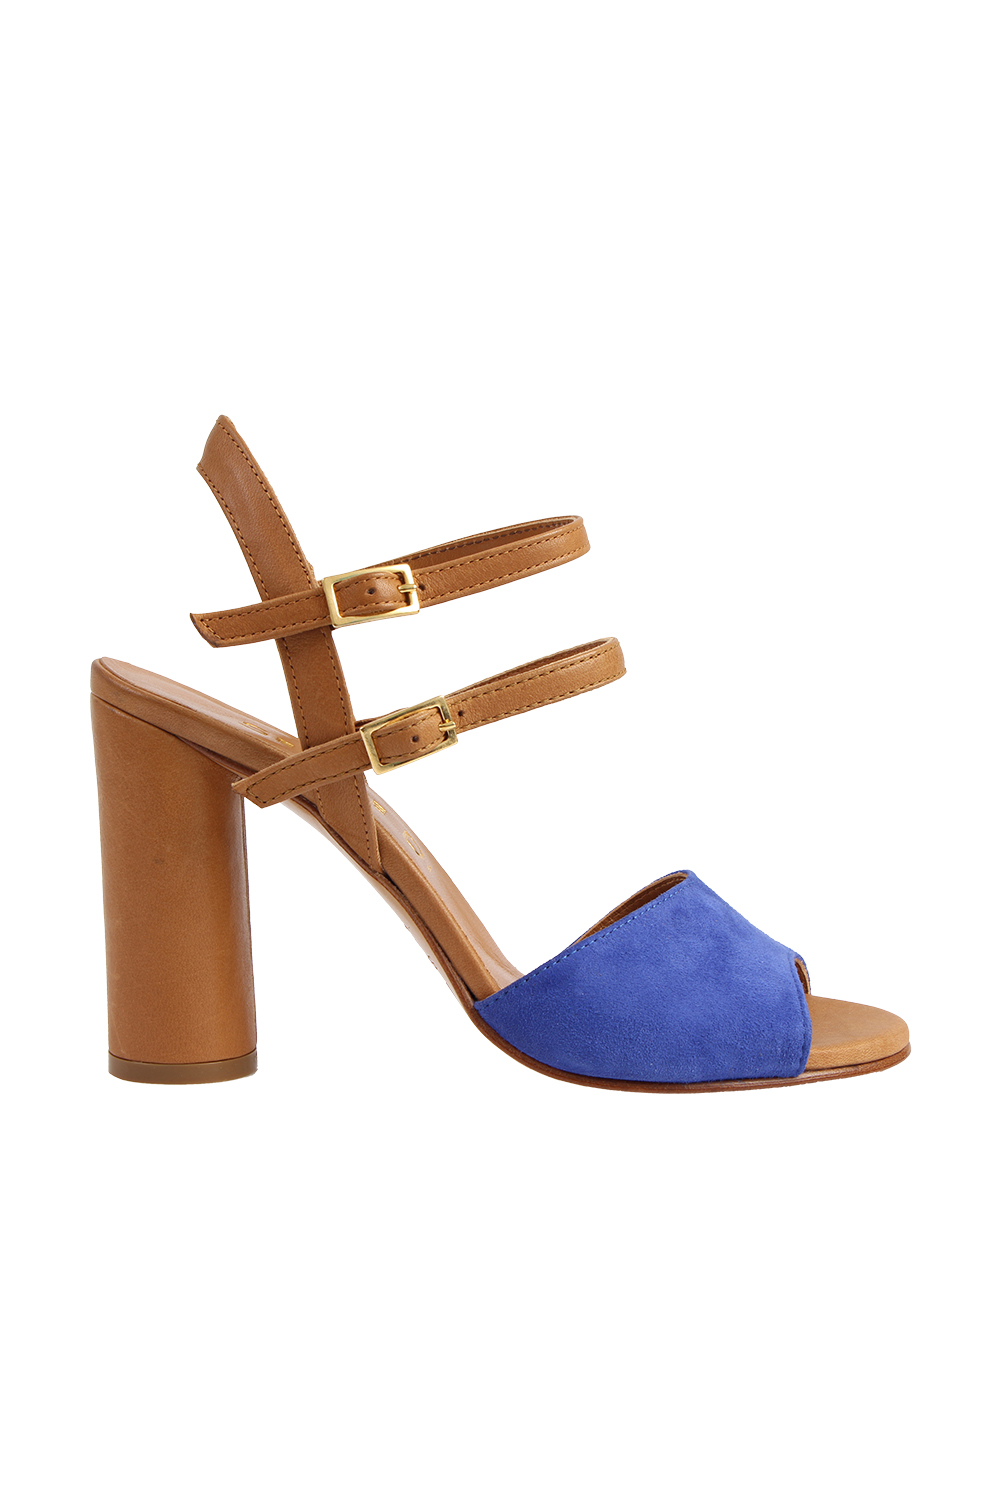 Heels, $369, by Sempre Di.